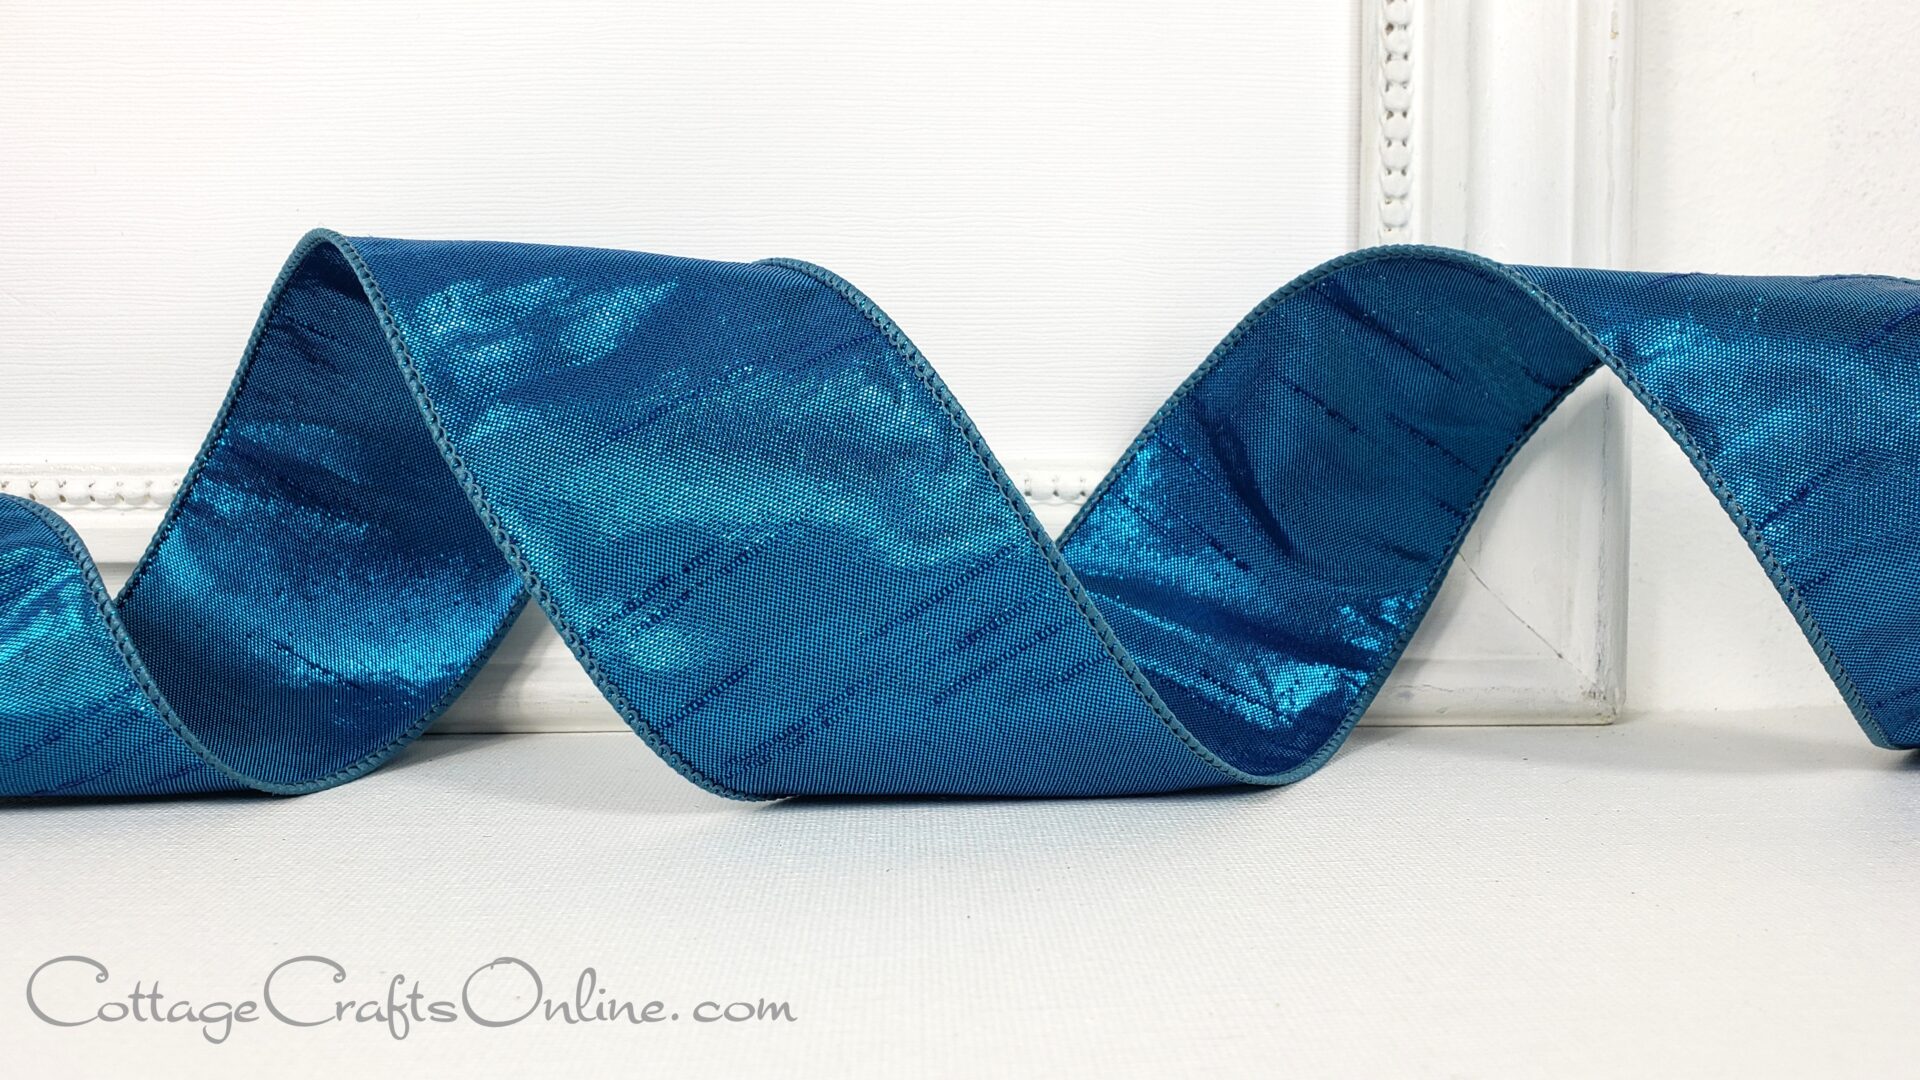 A blue shiny ribbon